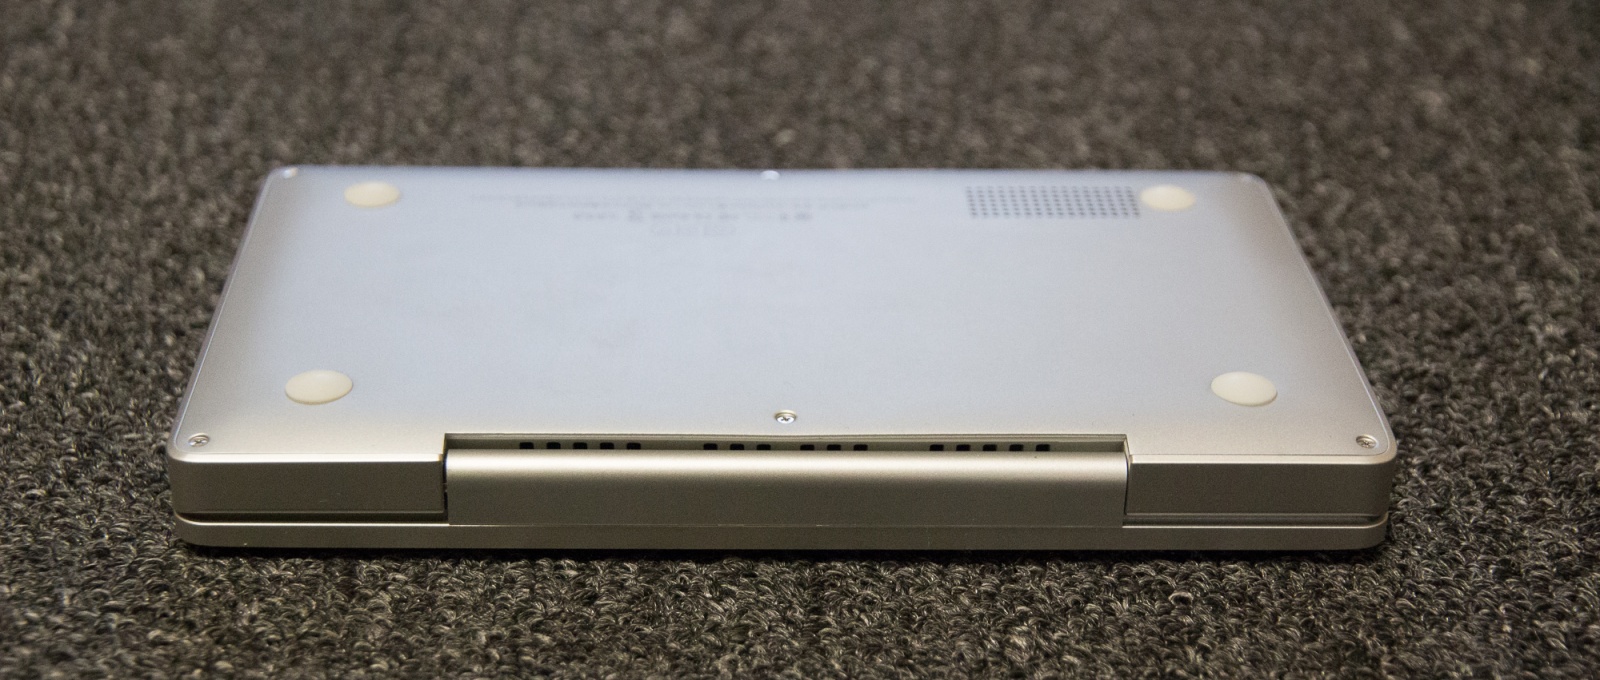 Обзор миниатюрного 7" ноутбук GPD Pocket. Рабочее место сисадмина-программиста в кармане куртки - 10